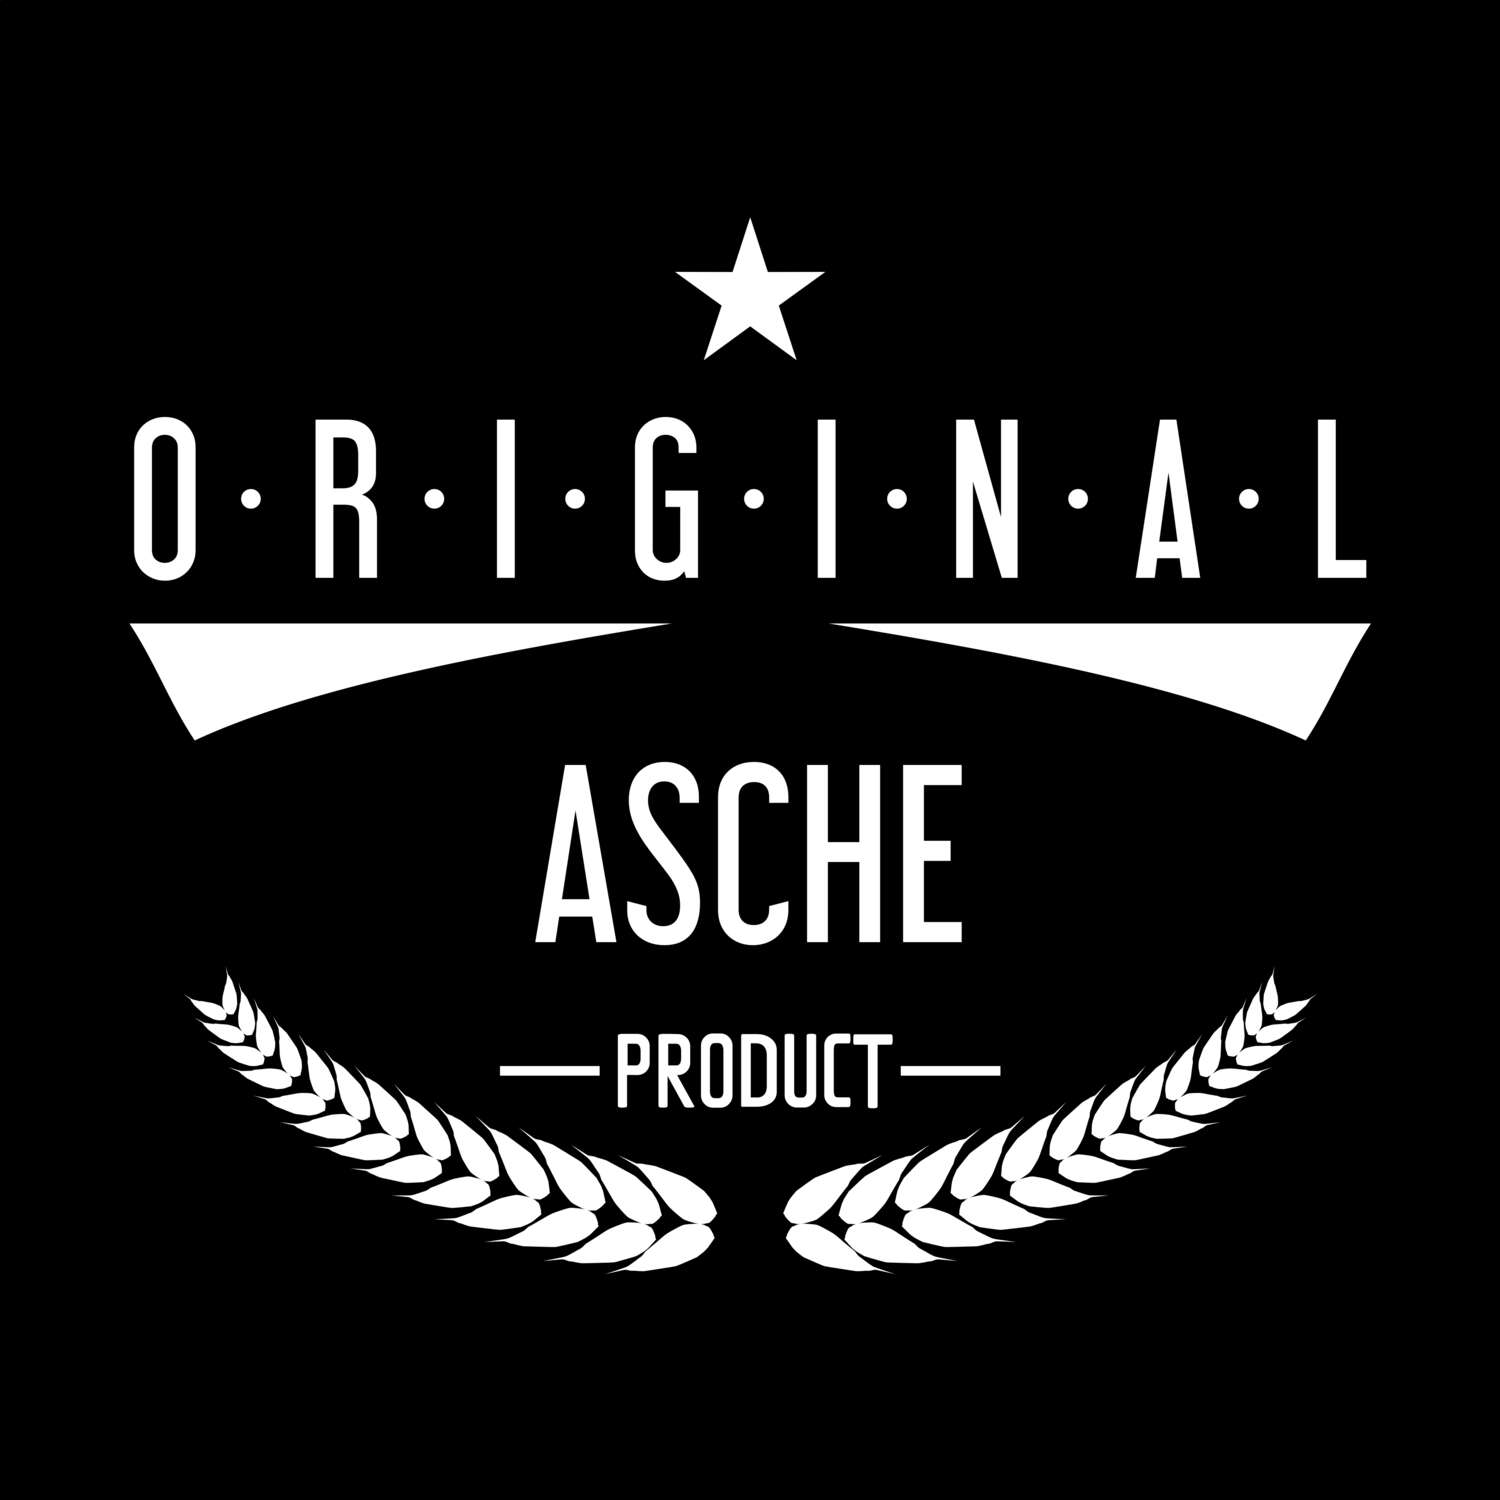 Asche T-Shirt »Original Product«